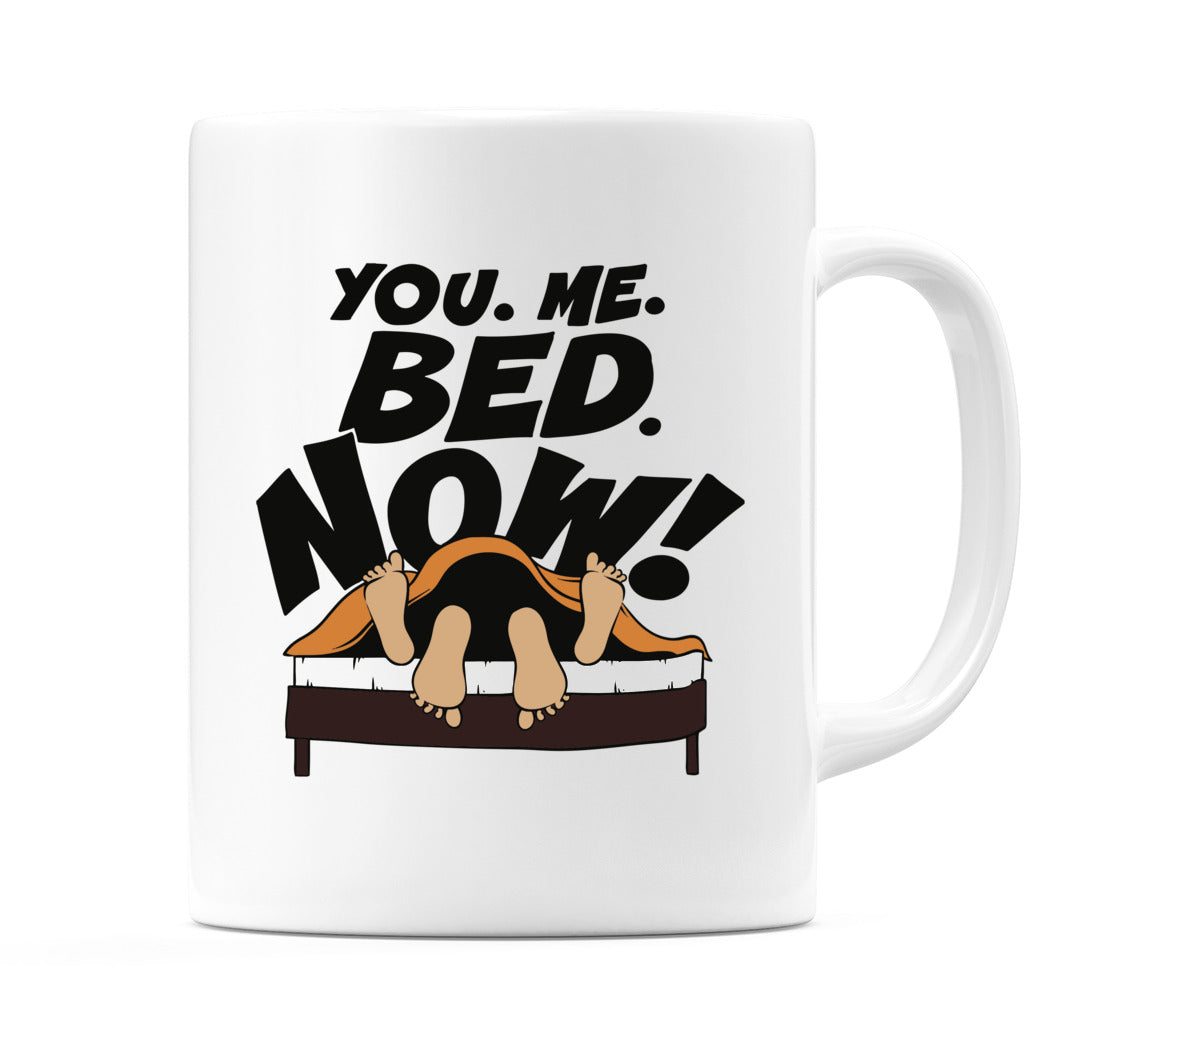 You. Me. Bed. Now! Mug